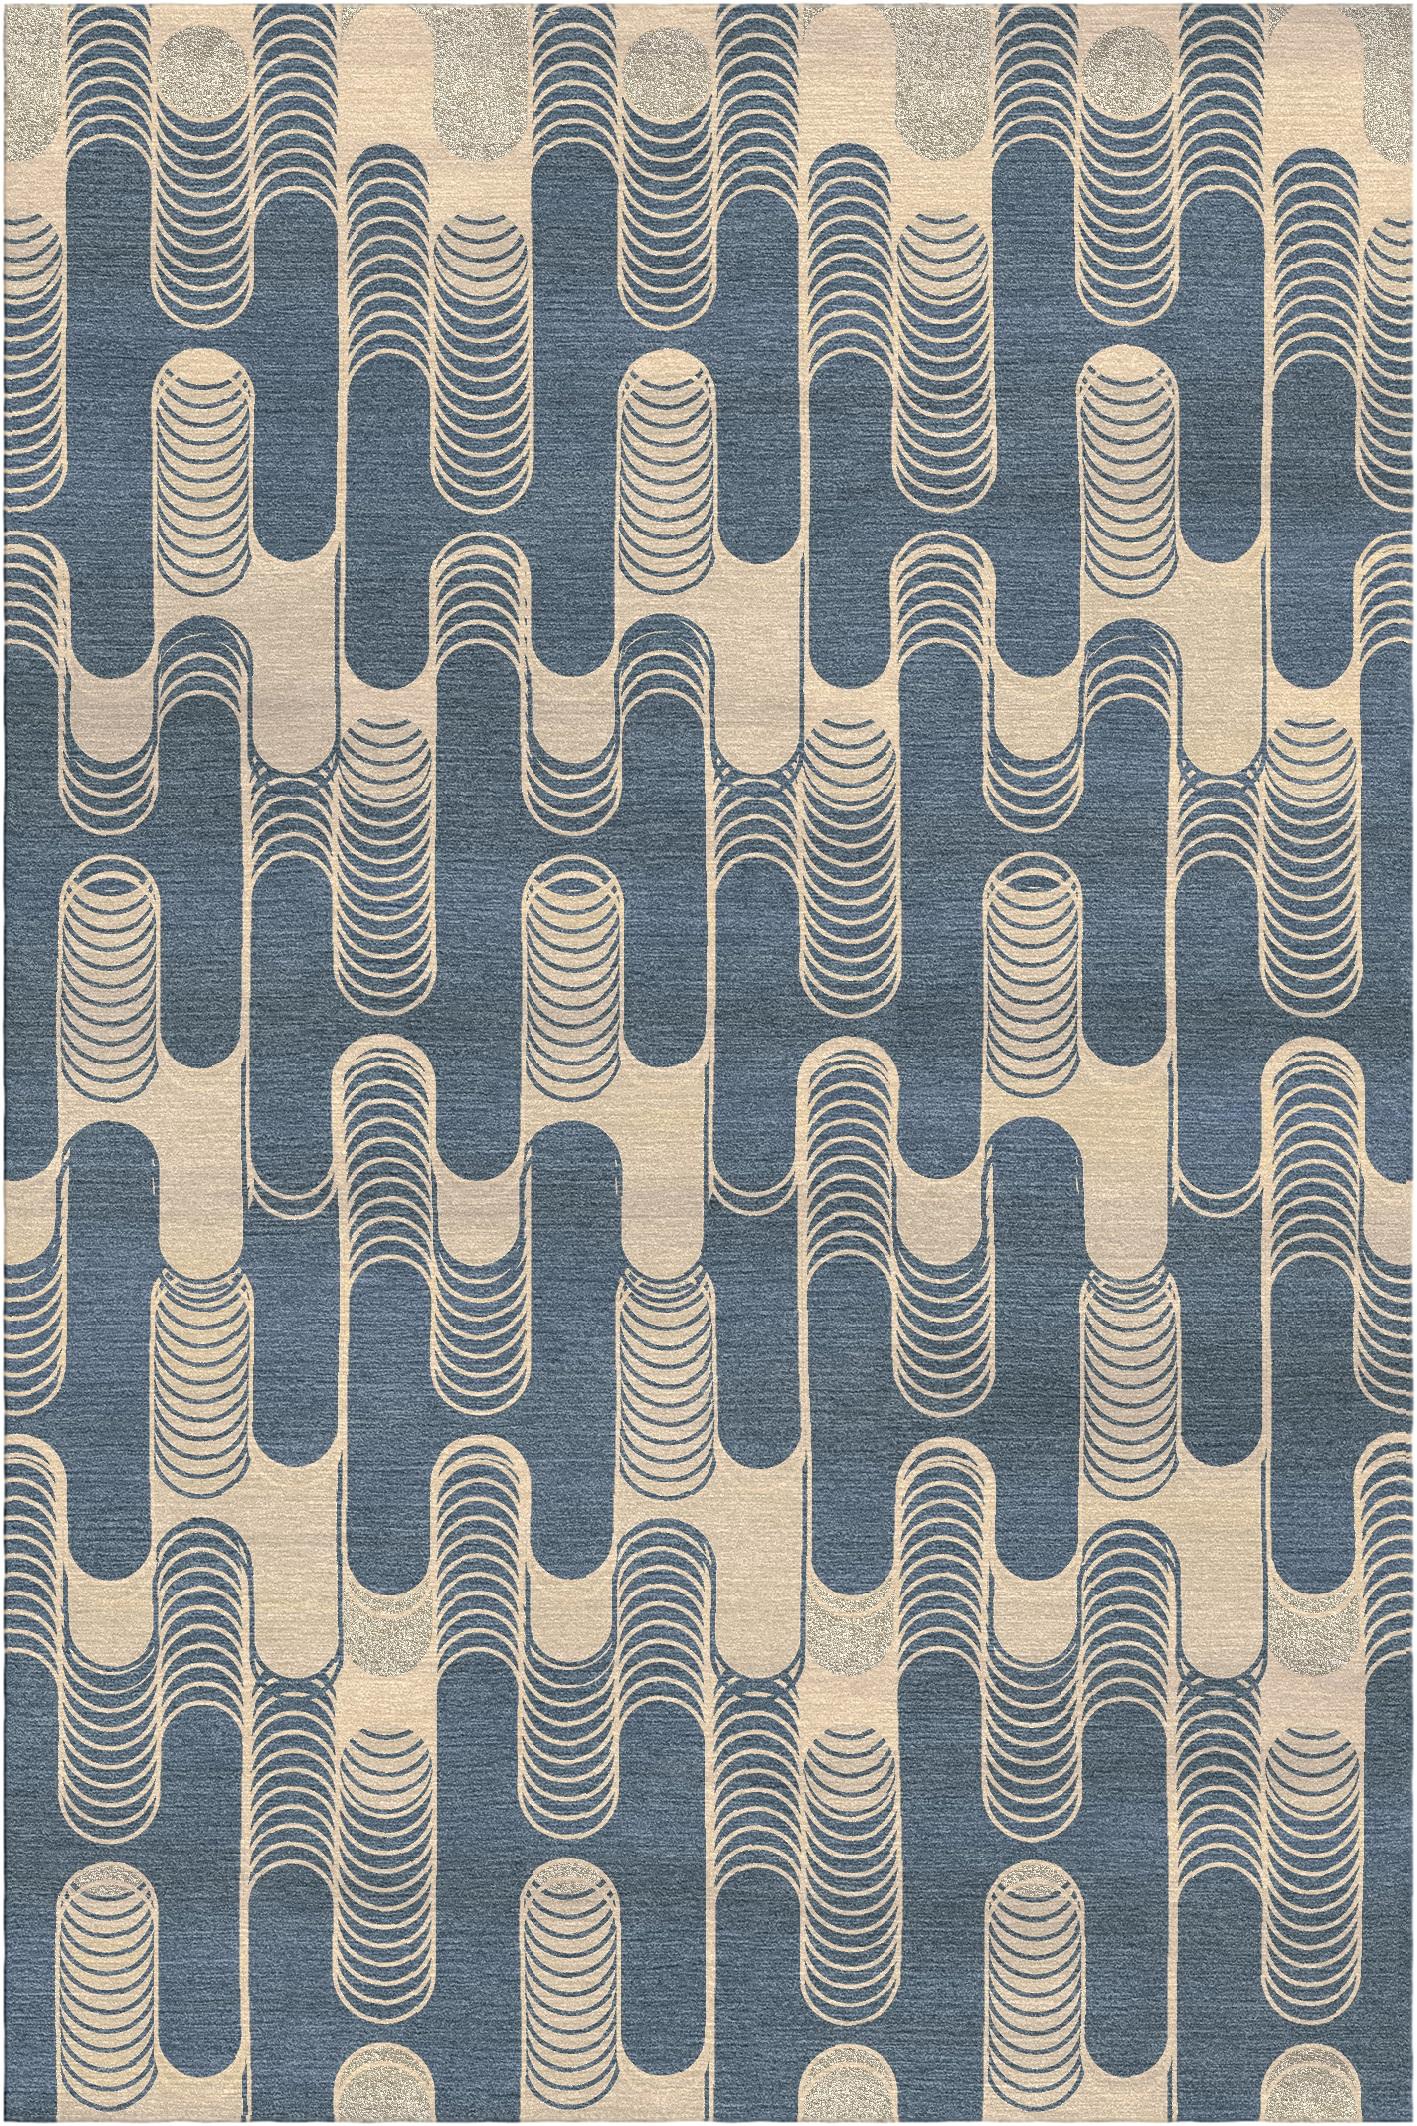 Settanta-Teppich I von Giulio Brambilla
Abmessungen: D 300 x B 200 x H 1,5 cm
MATERIALIEN: NZ-Wolle, Bambusseide
Erhältlich in anderen Farben.

Mit seinem modernen, geometrischen Design und seiner starken visuellen Wirkung wird dieser Teppich ein